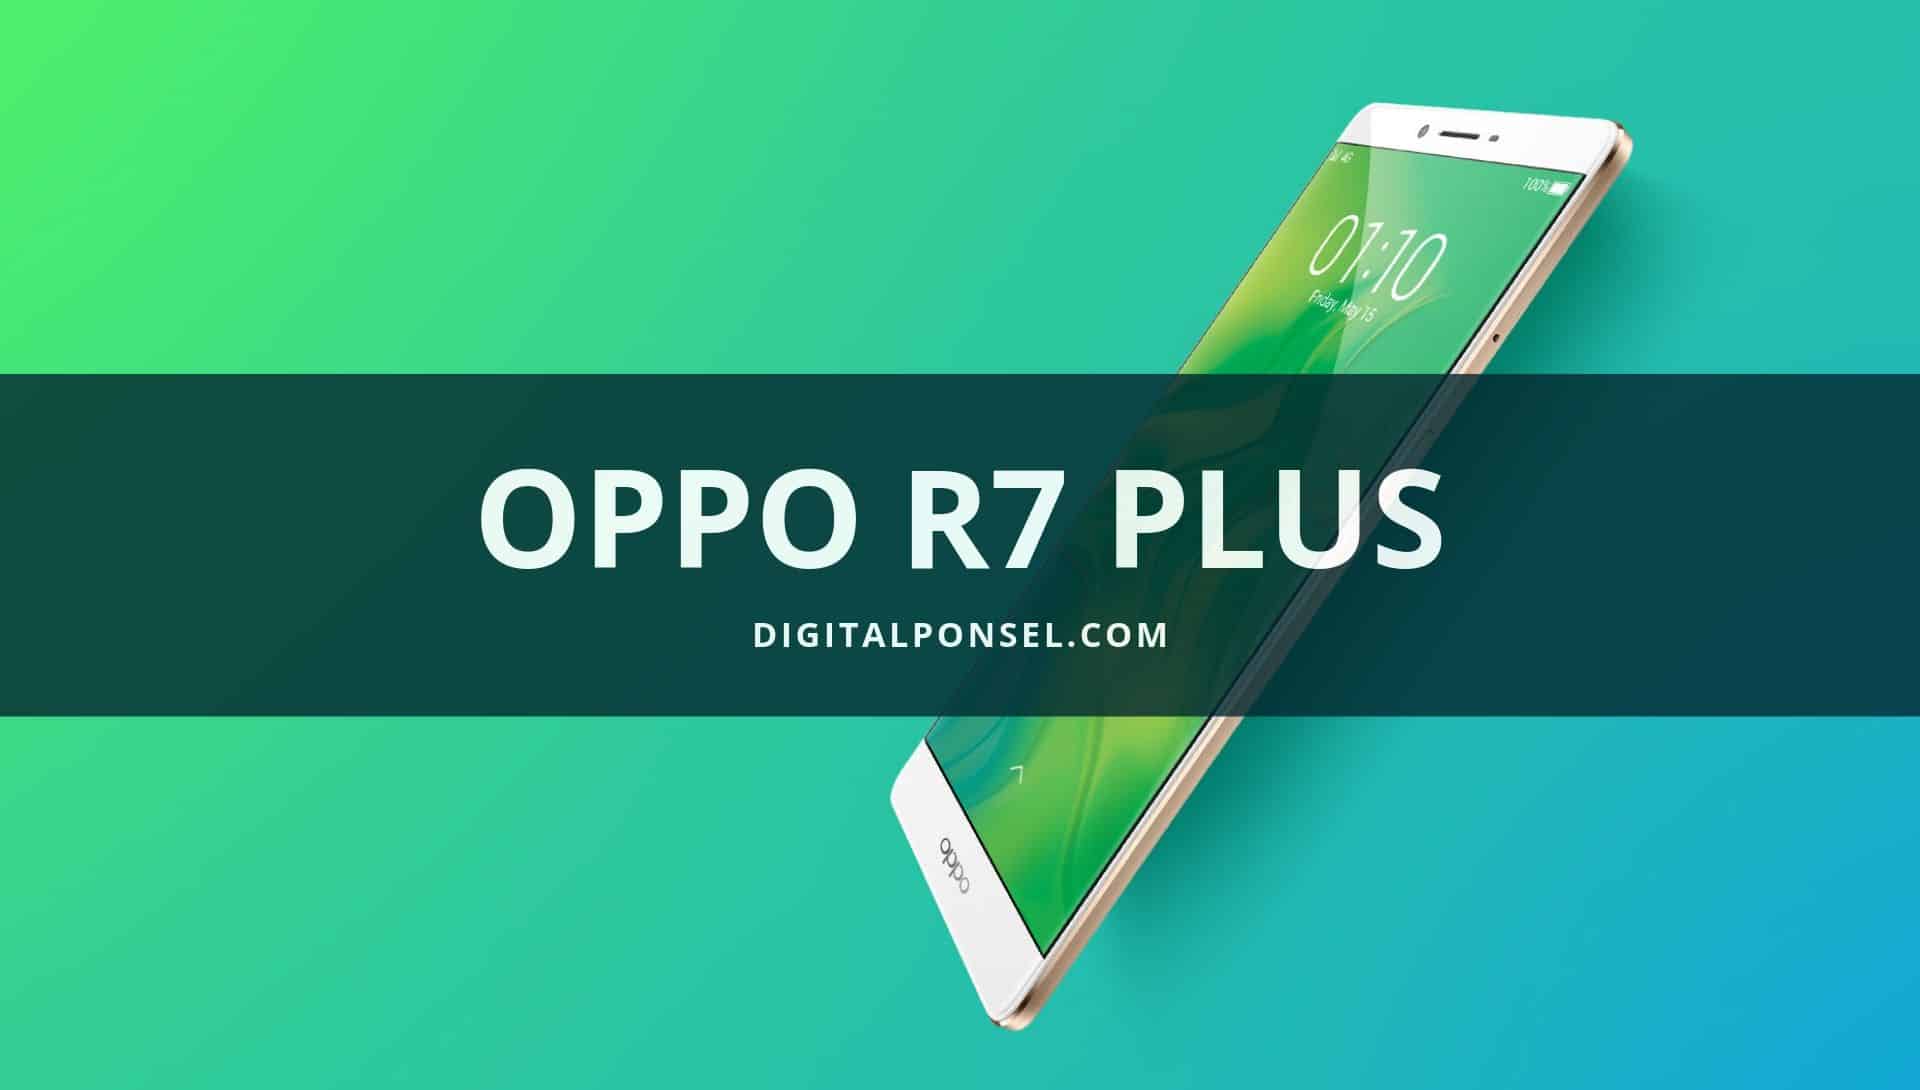 Harga Oppo R7 Plus Terbaru dan Spesifikasi September 2019 